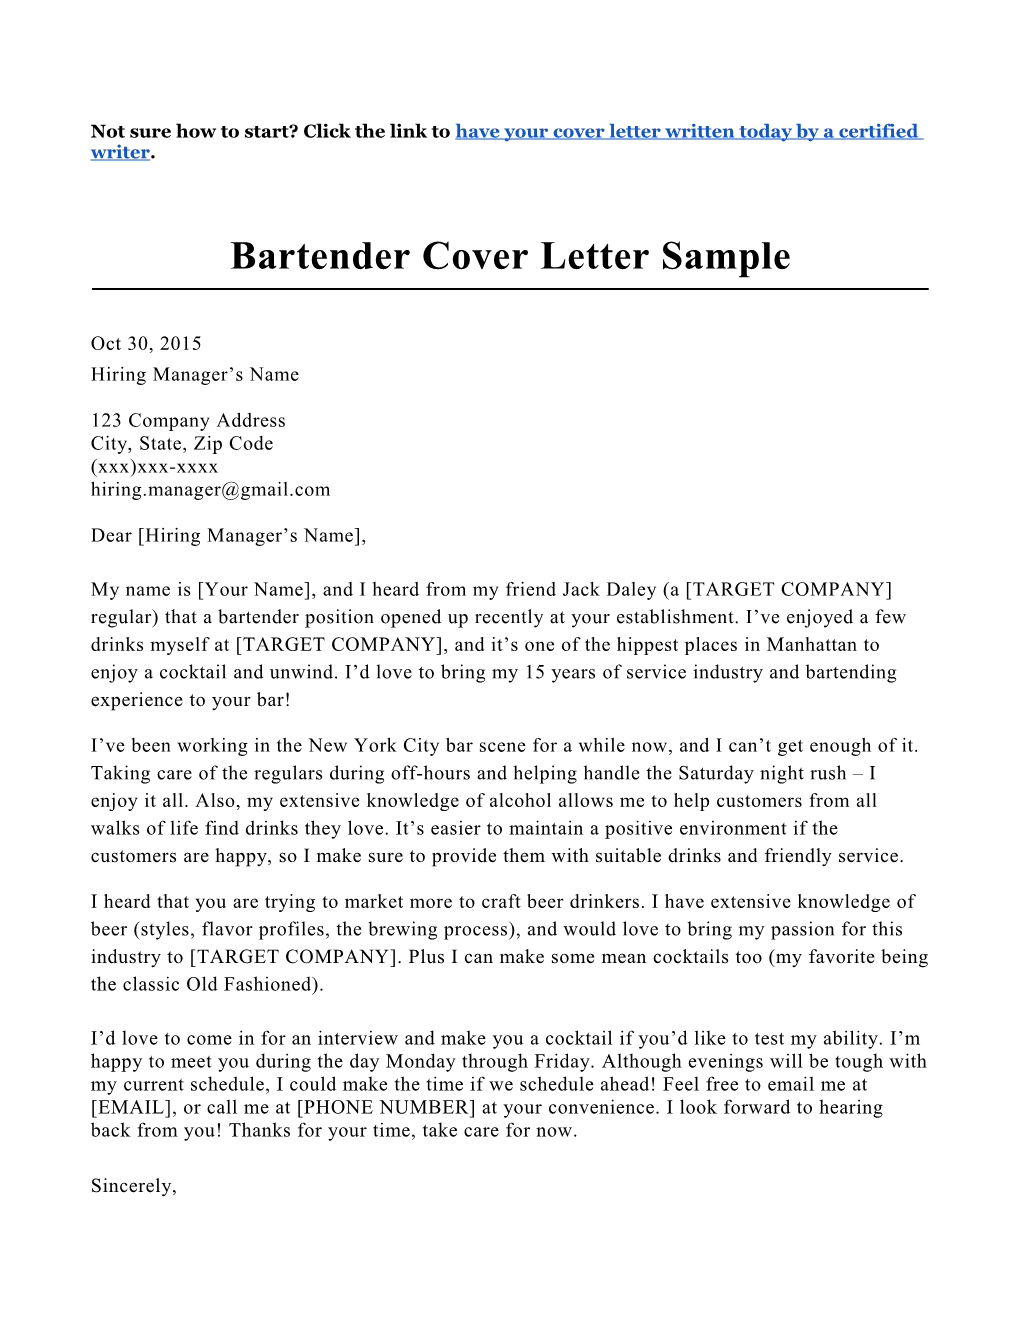 Bartender Cover Letter Sample